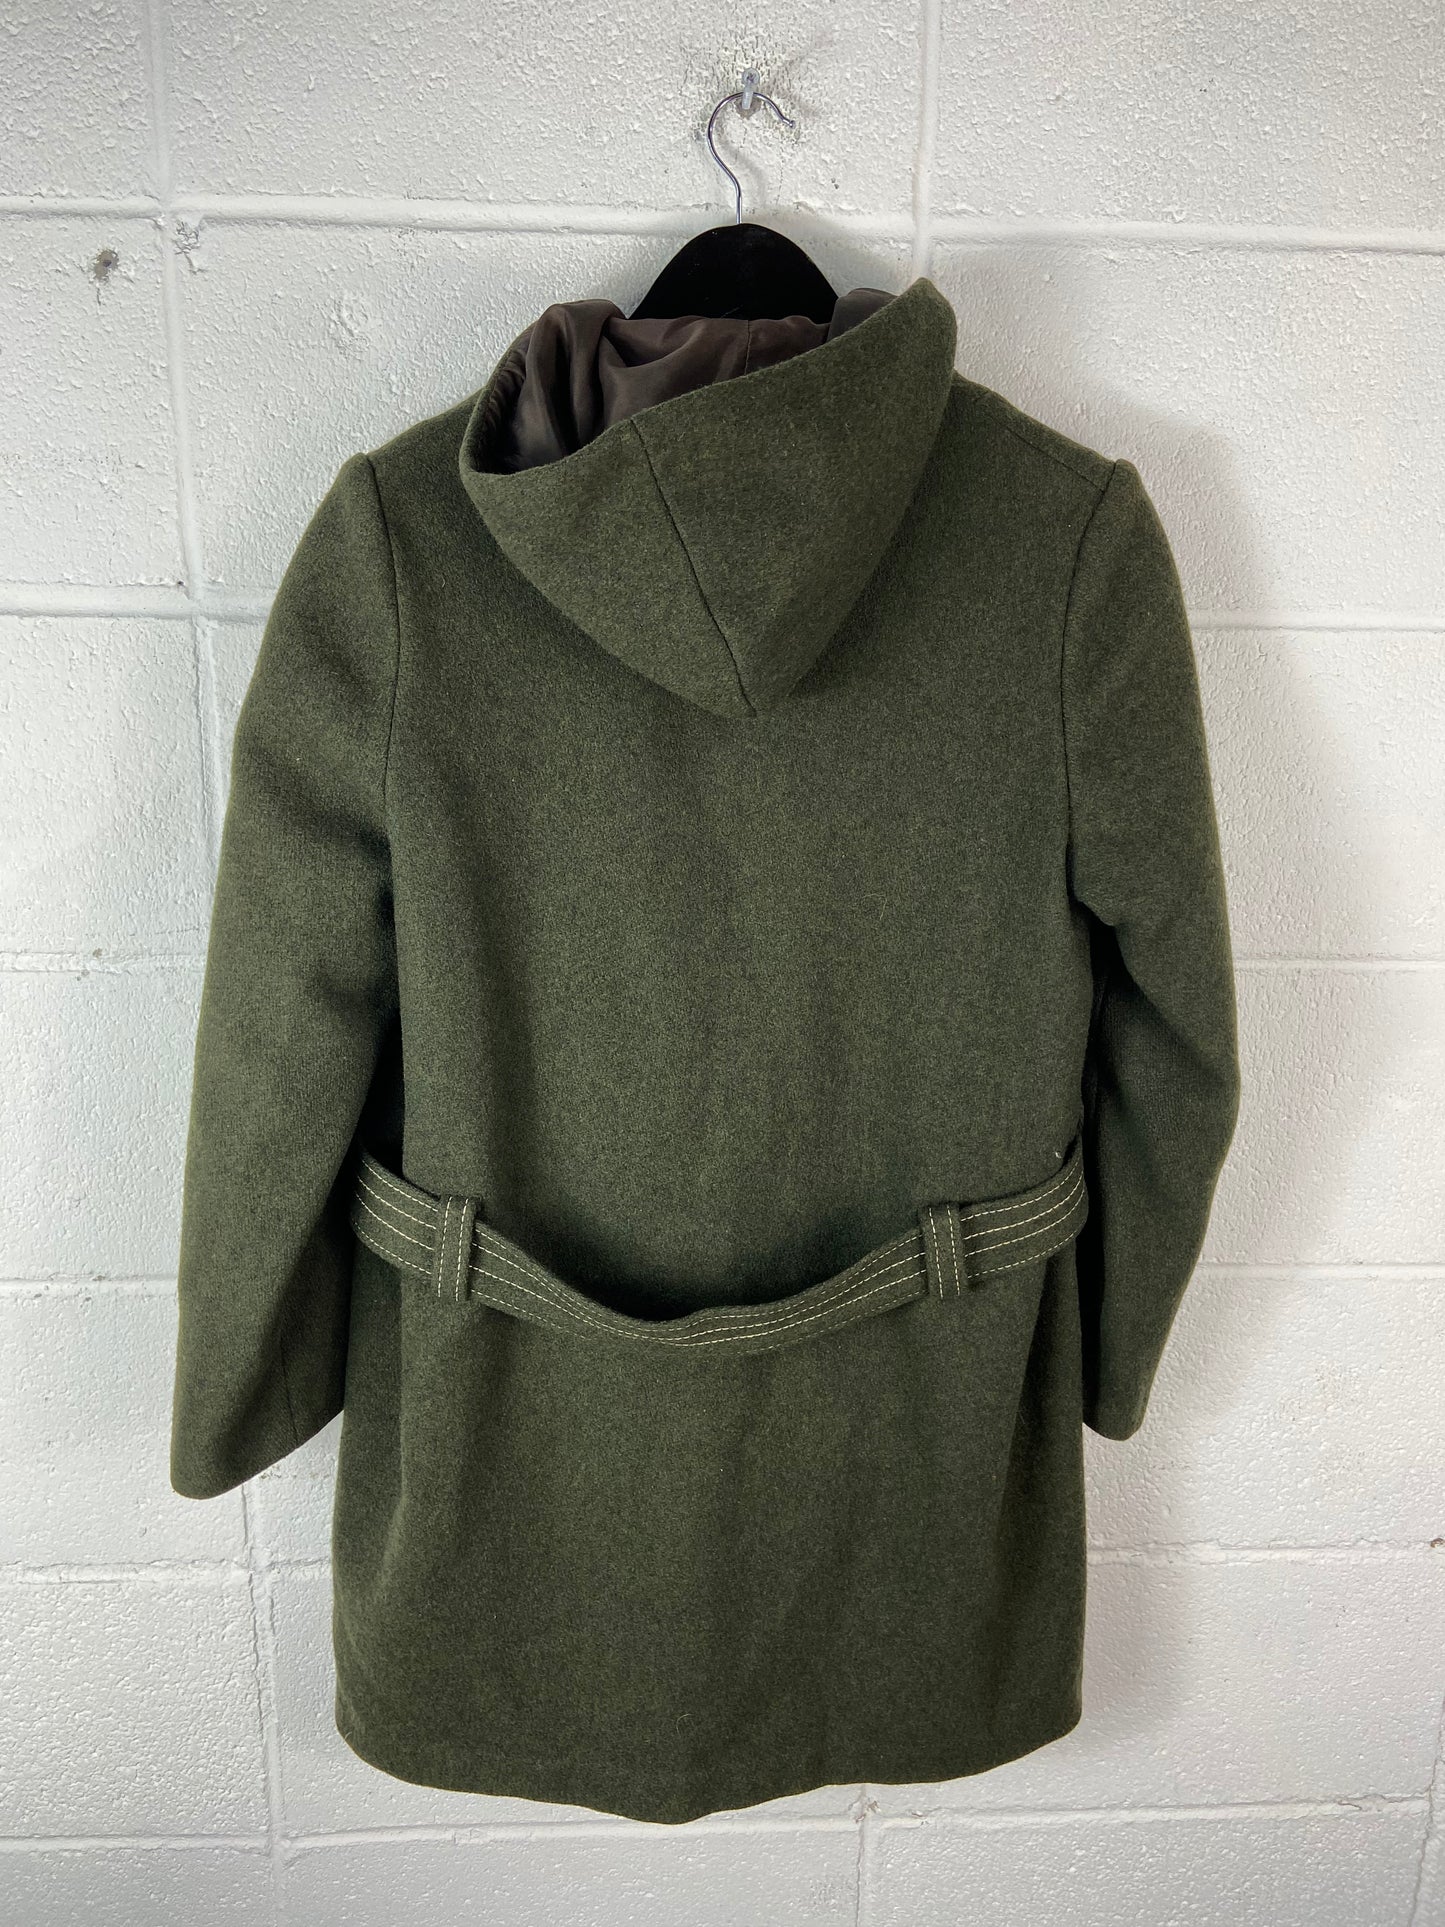 VTG 70's Green Wool Buckle Field Jacket Sz M/L